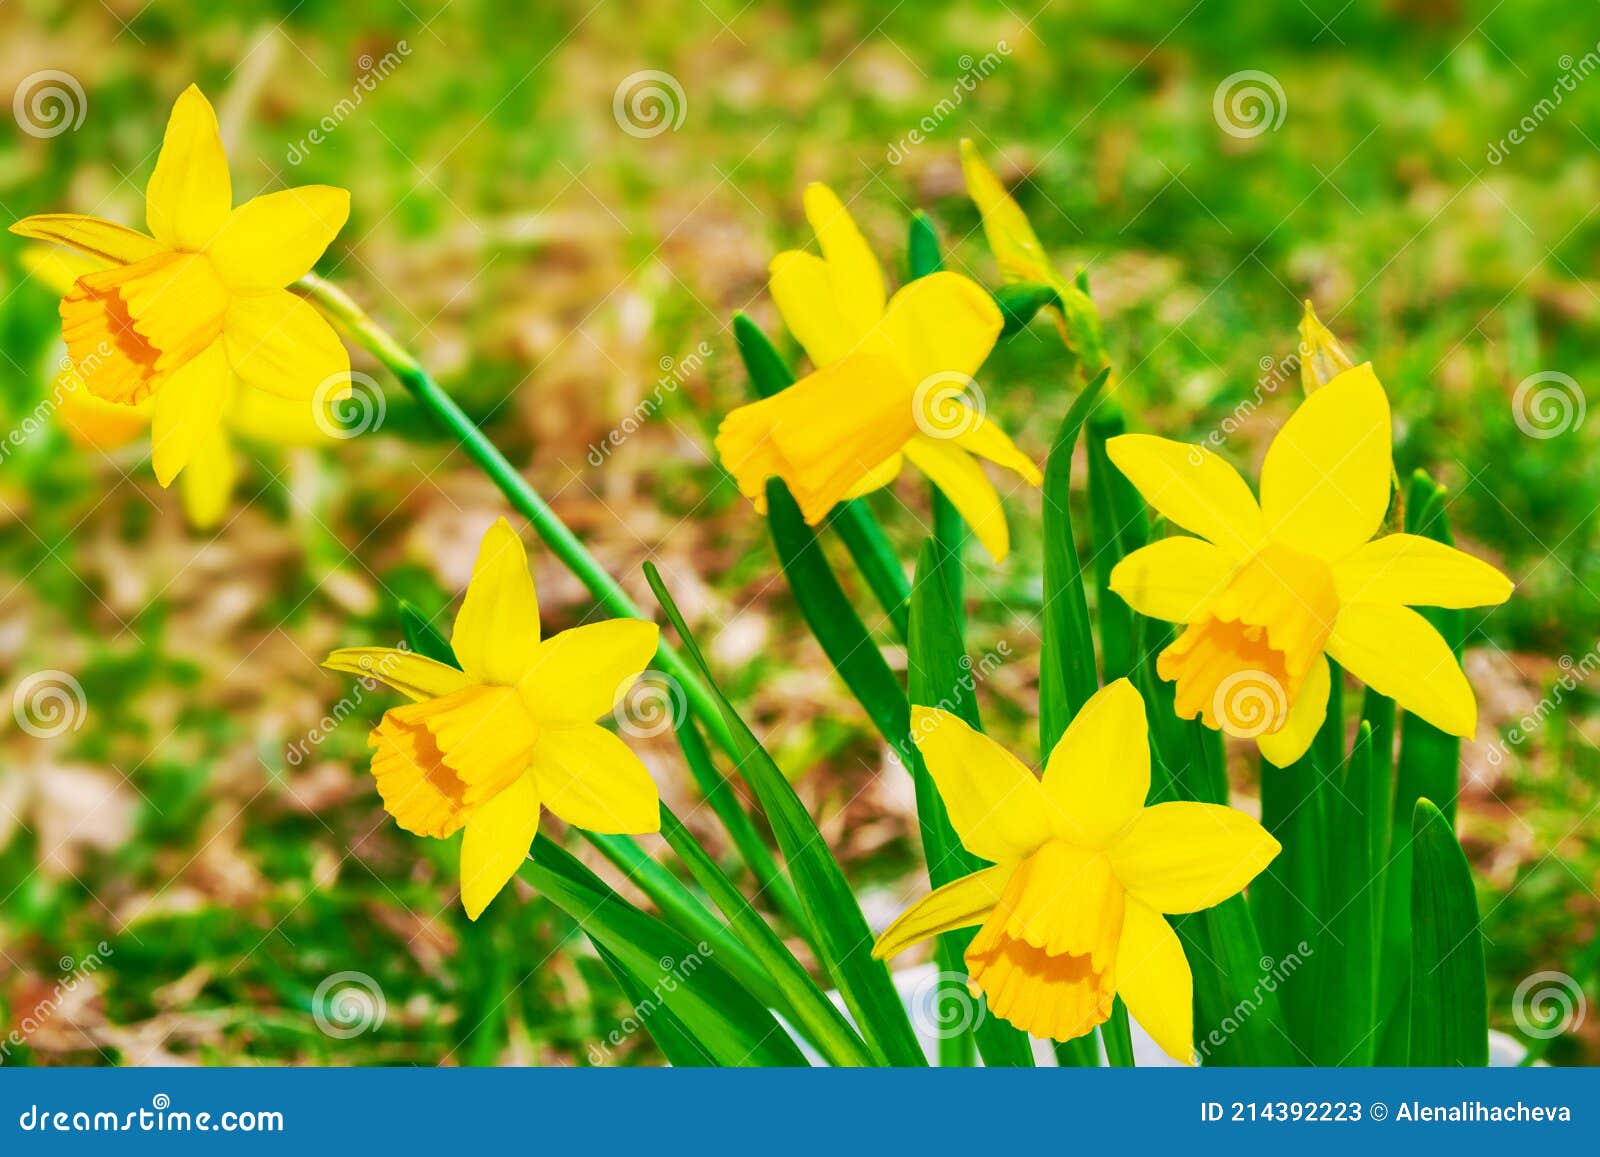 Fleurs De Printemps De Jonquilles. Fleurs Vives Et Colorées Image stock -  Image du zone, fleur: 214392223